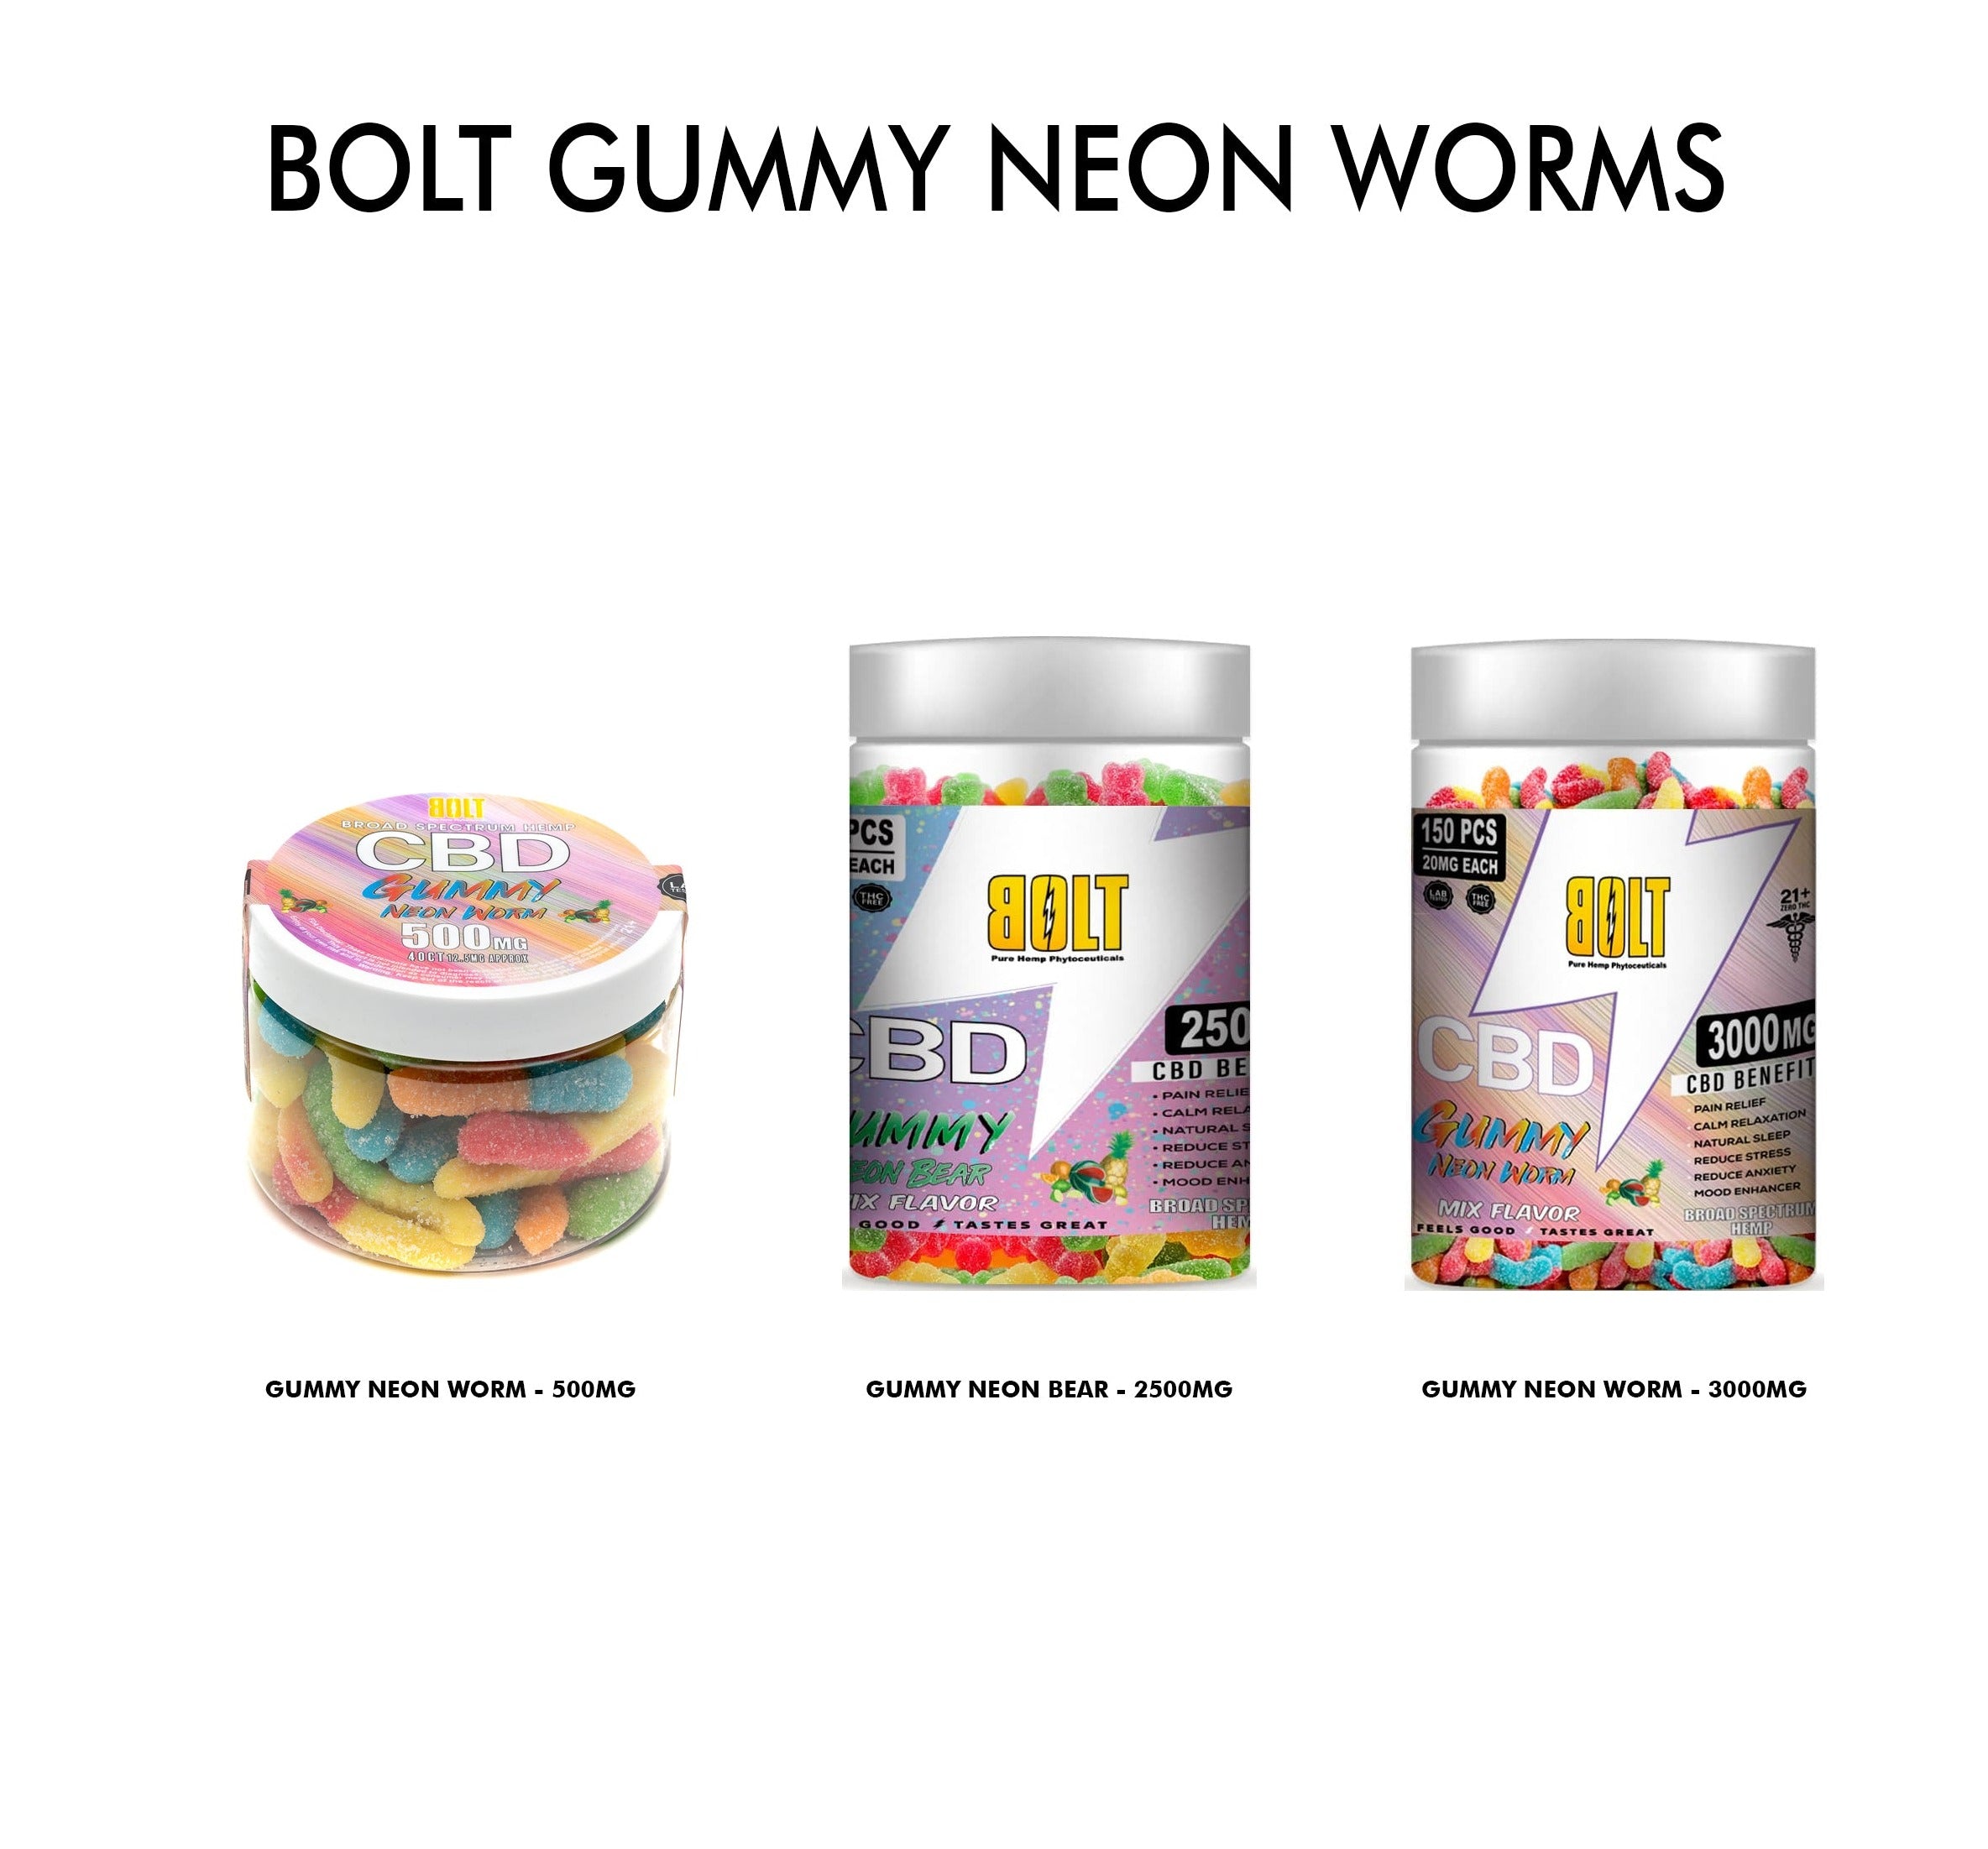 Bolt Gummy Neon Worms